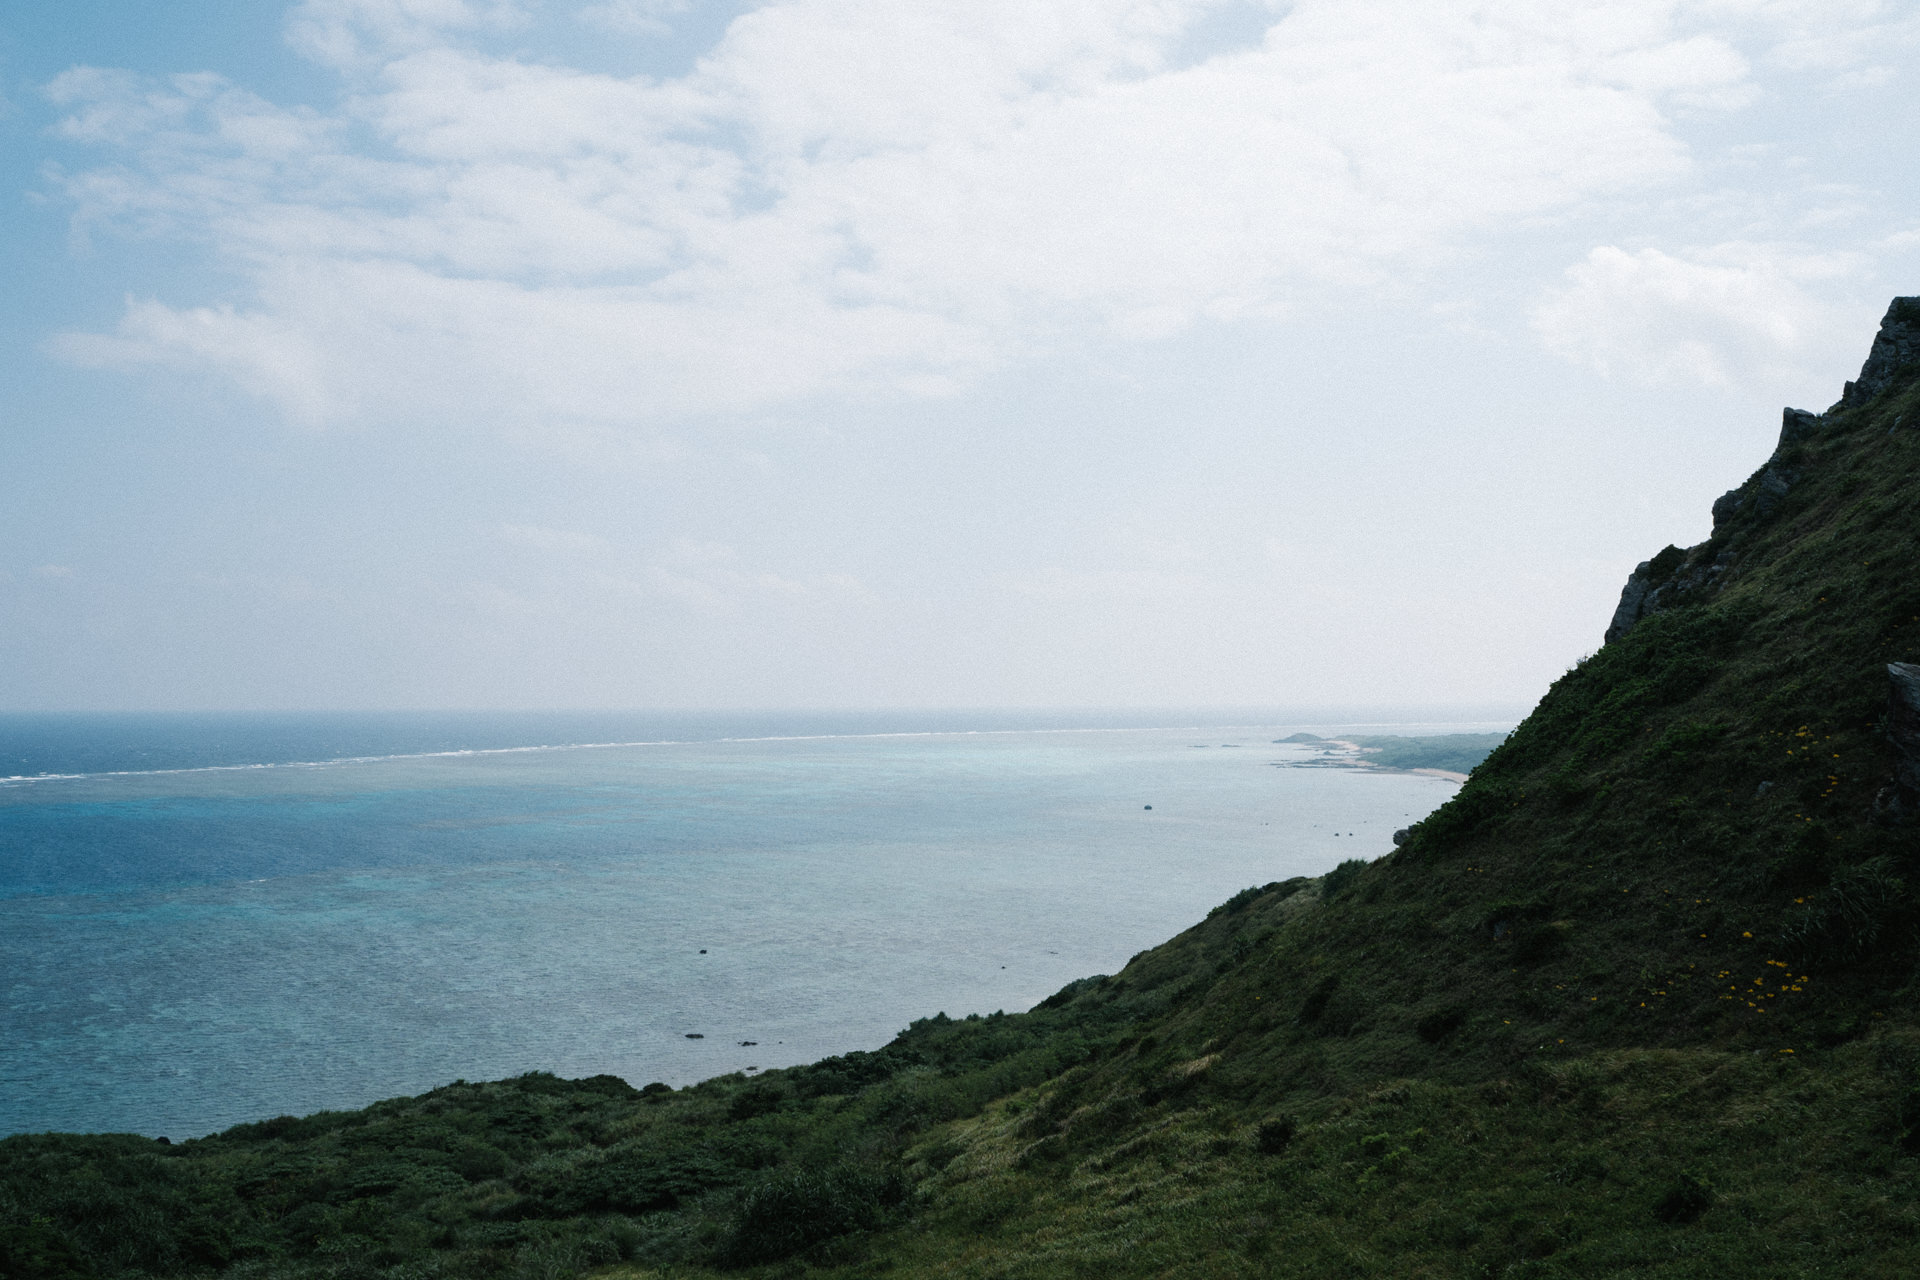 ライカと八重山諸島をめぐる写真旅